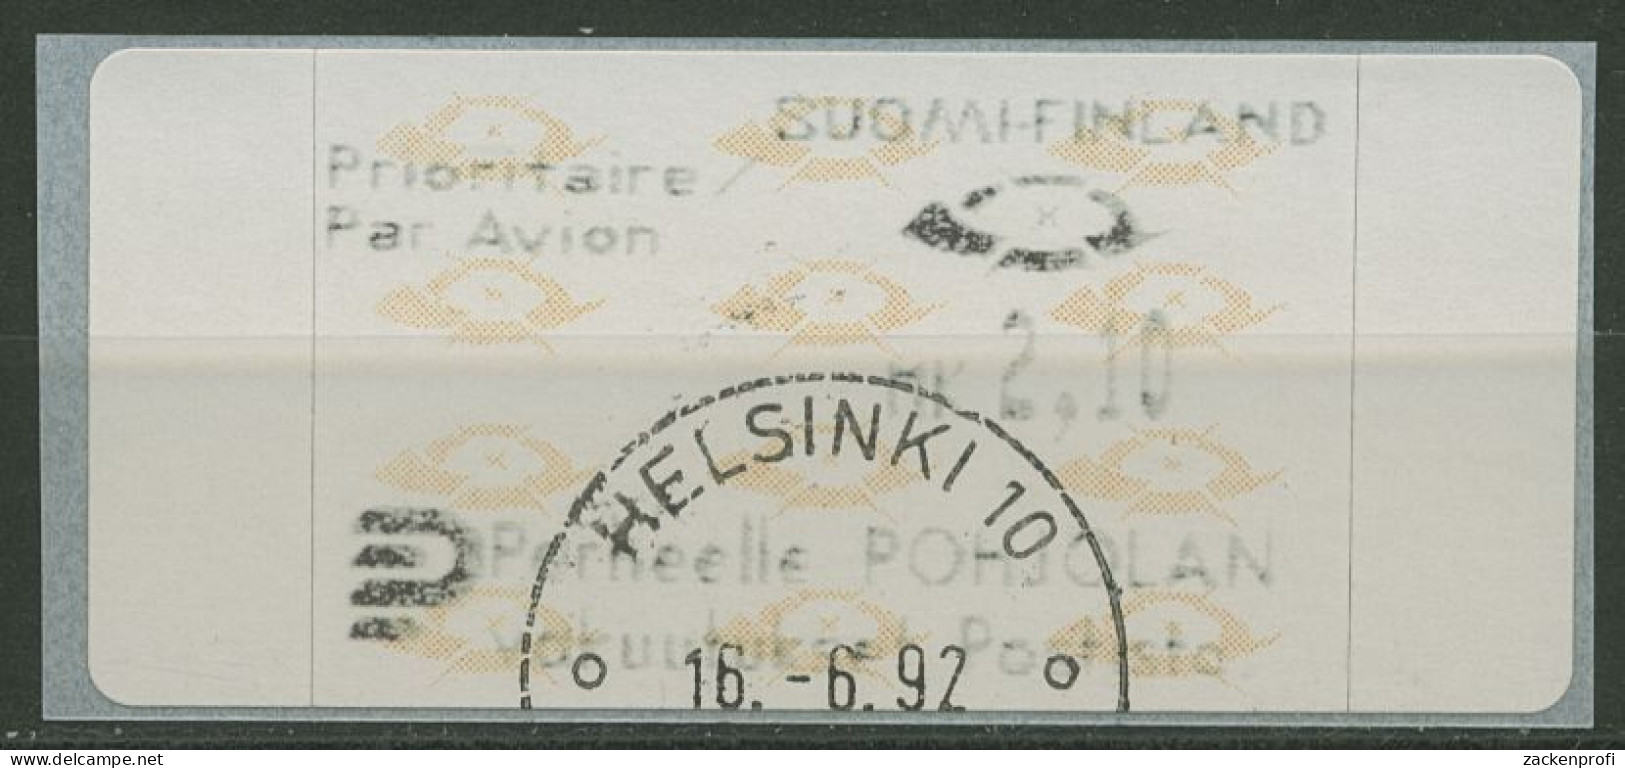 Finnland Automatenmarken 1992 Posthörner Einzelwert ATM 12.3 Z6 Gestempelt - Timbres De Distributeurs [ATM]